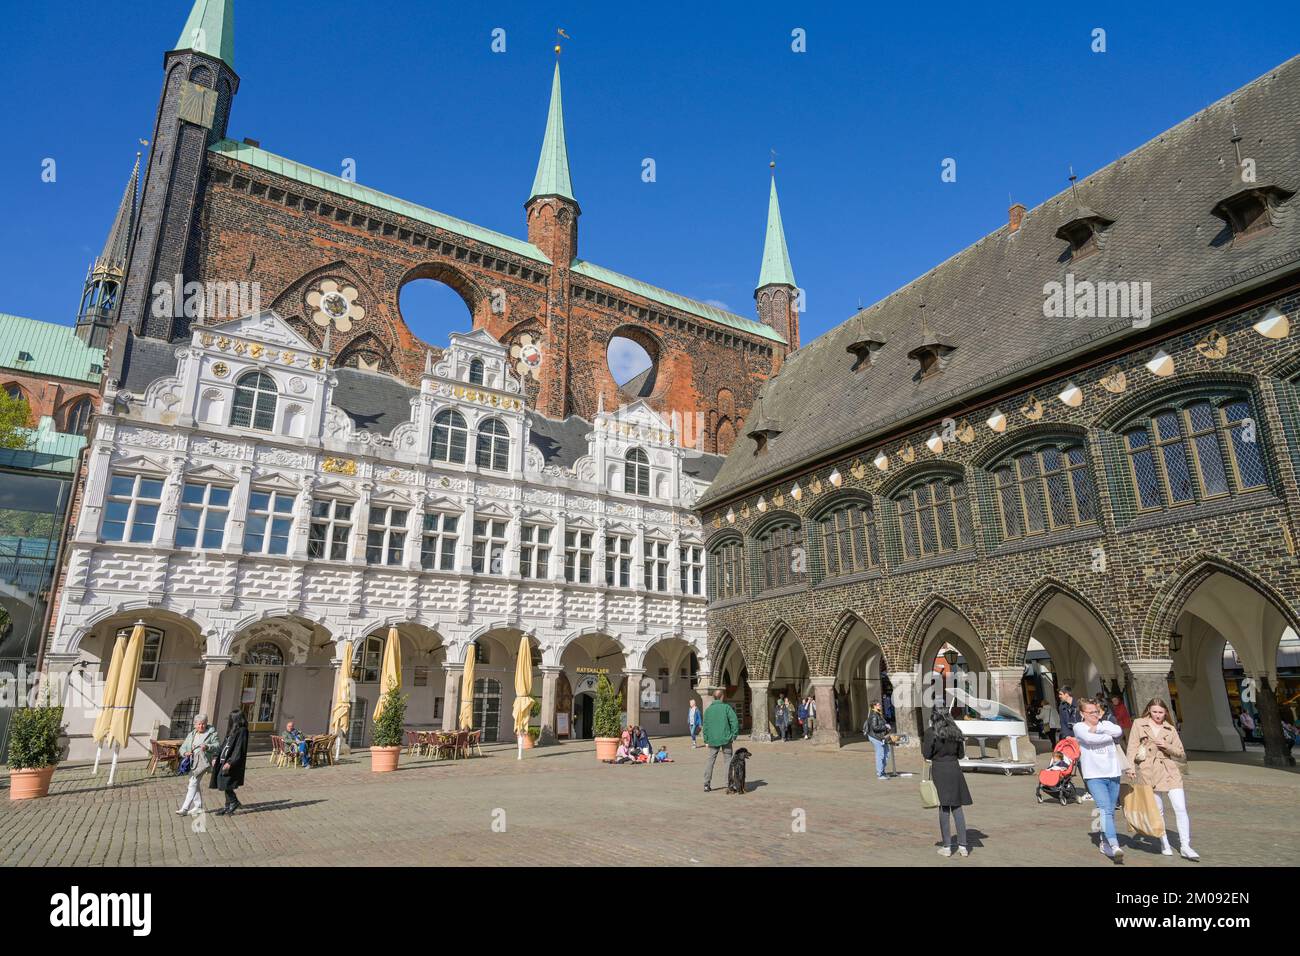 Renaissancelaube, gotische Schildwand (hinten), Langes Haus (rechts), Rathaus, Markt, Lübeck, Schleswig-Holstein, Germania Foto Stock